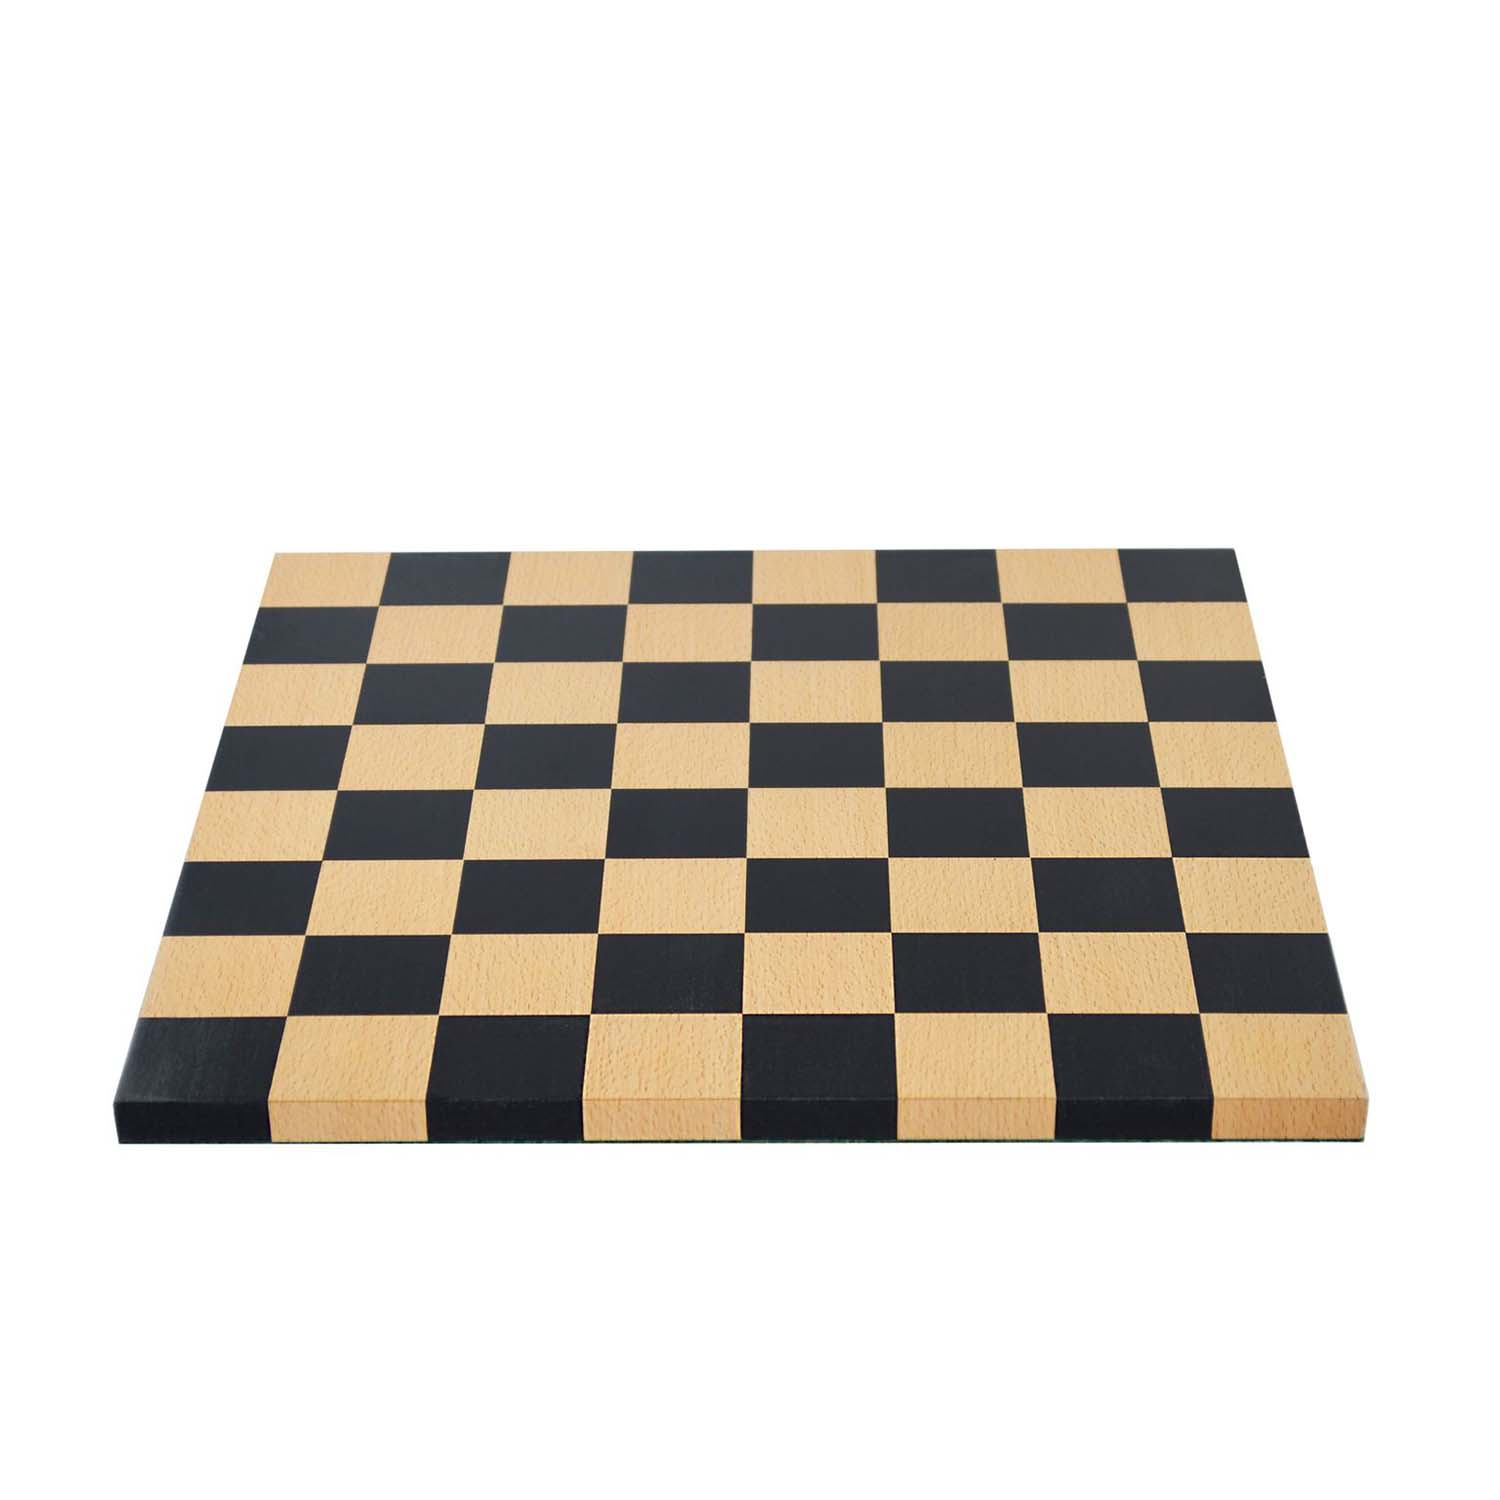 マン・レイのチェスボード の画像